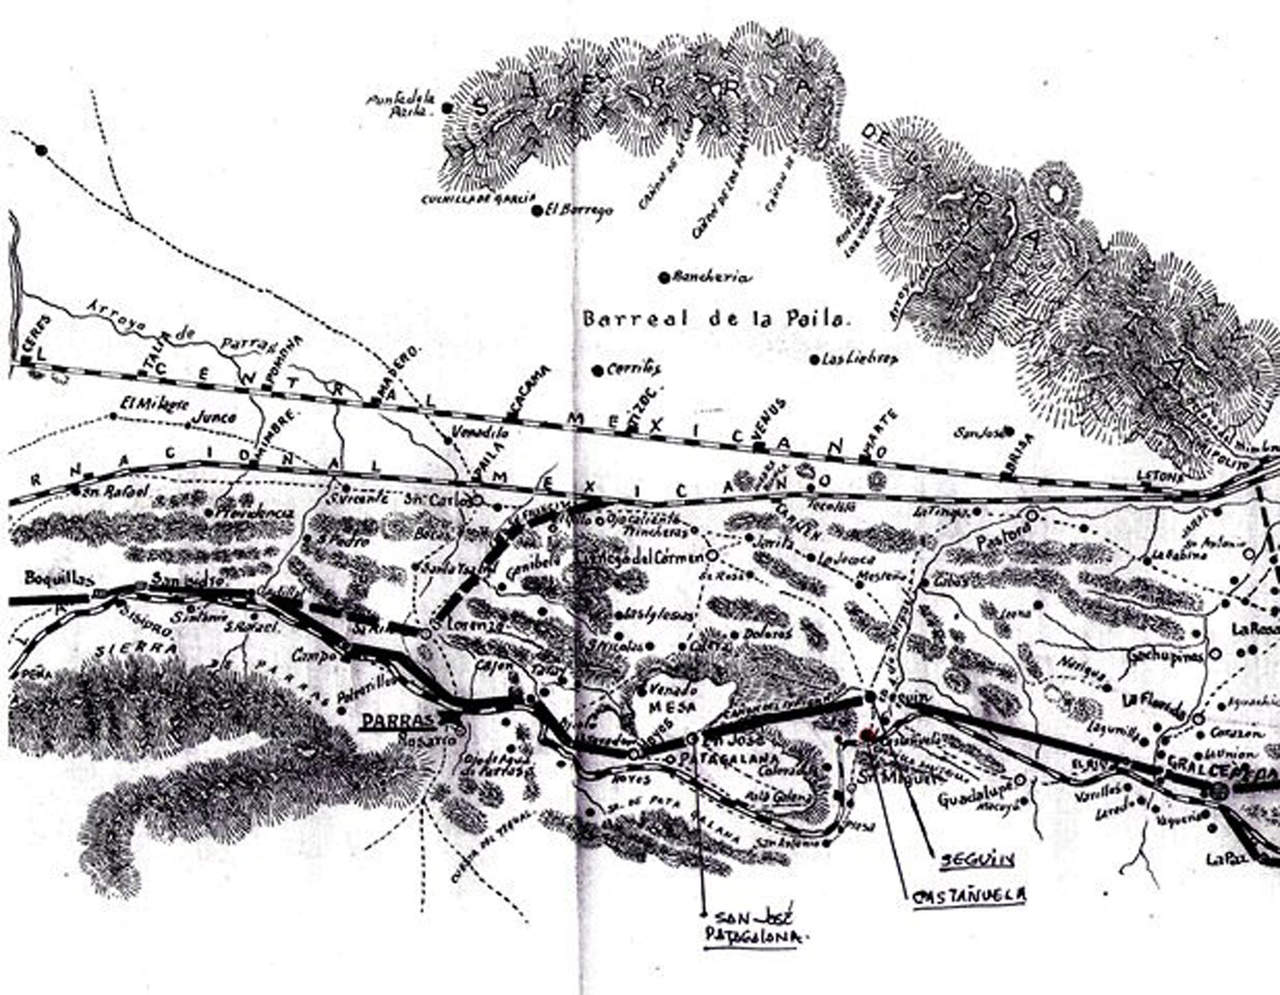 Plano de la región de Parras, elaborado en 1905, que abarca de la Peña(Viesca) a
General Cepeda, en donde podemos ubicar el sitio en donde estuvo situada la hacienda
de Castañuela.